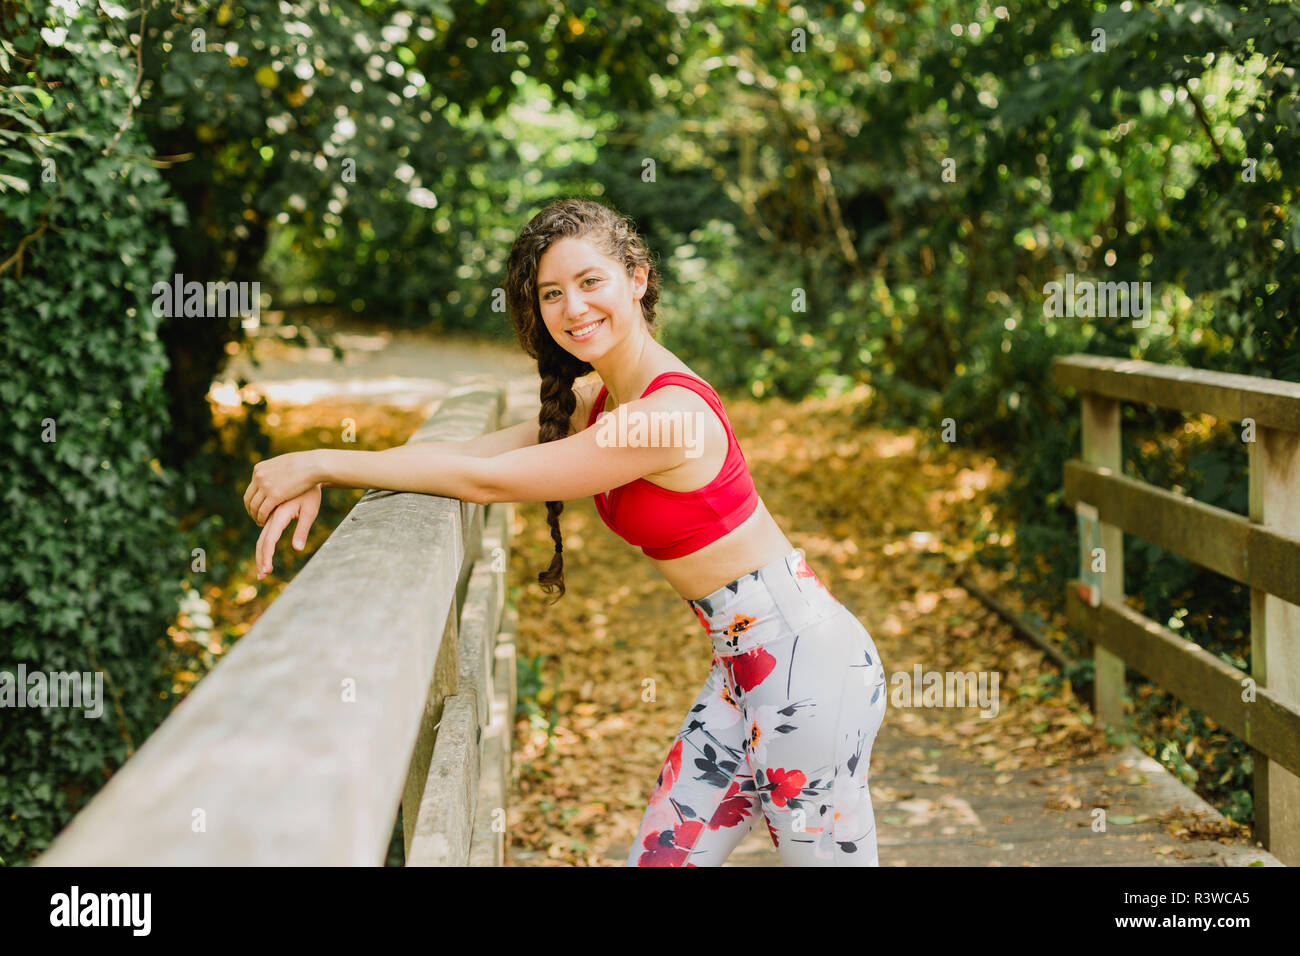 Young woman smiling pendant les pauses, après avoir pratiqué la méthode Pilates dans un parc urbain Banque D'Images